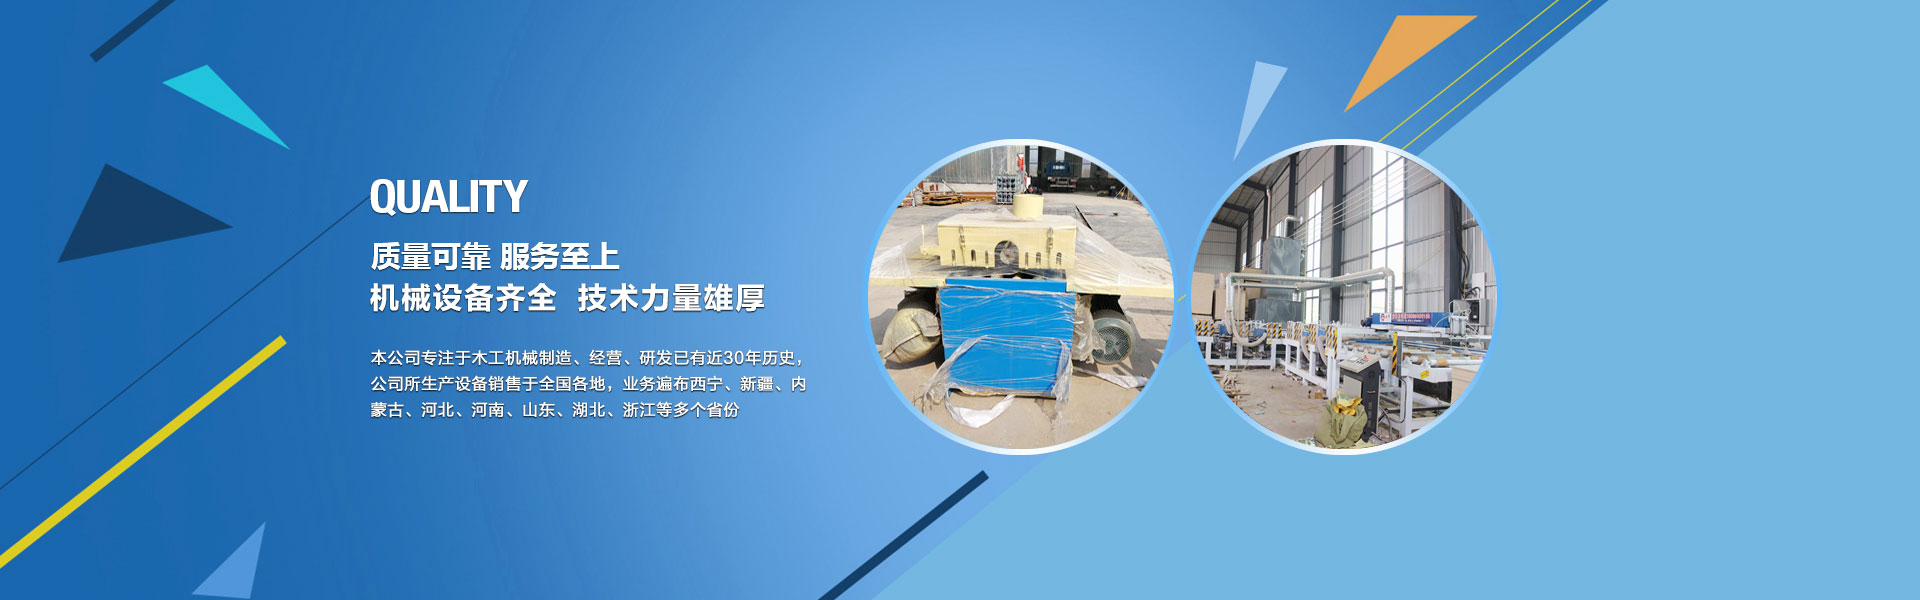 菏澤魯班防水是專業的防水建材廠家